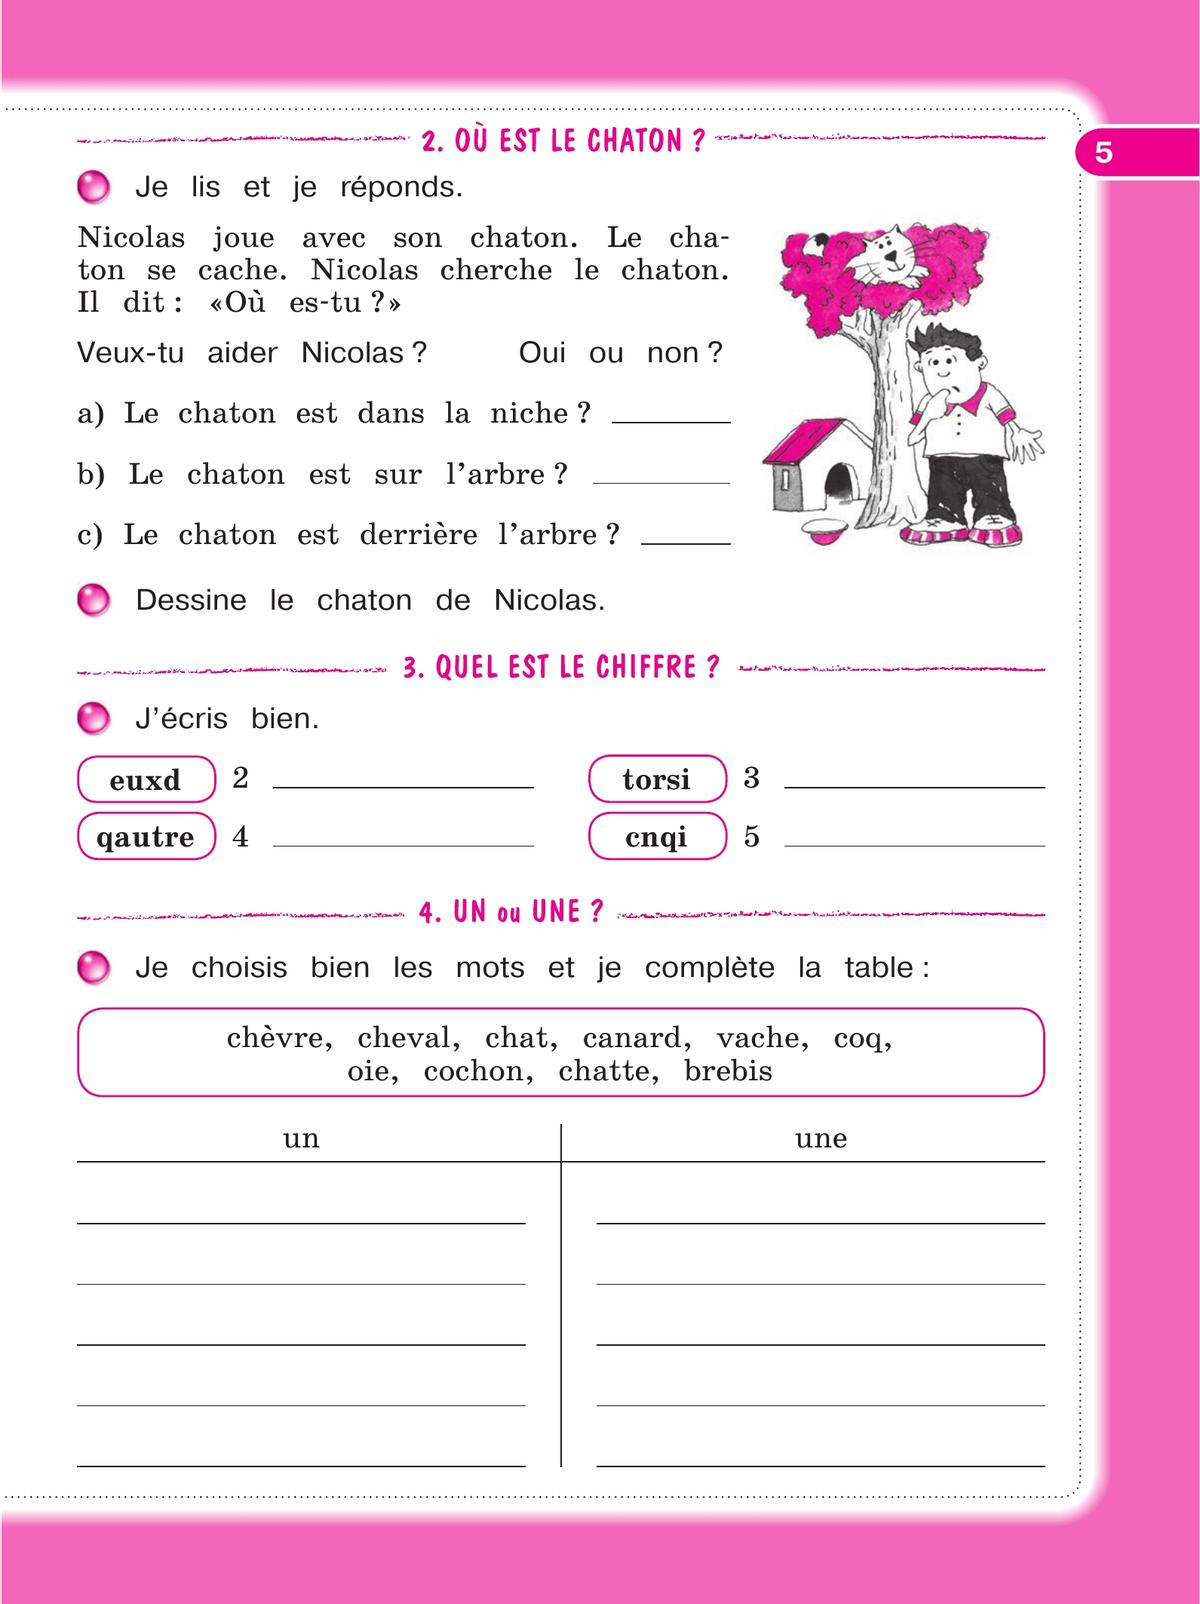 Французский язык. Рабочая тетрадь. 3 класс 5